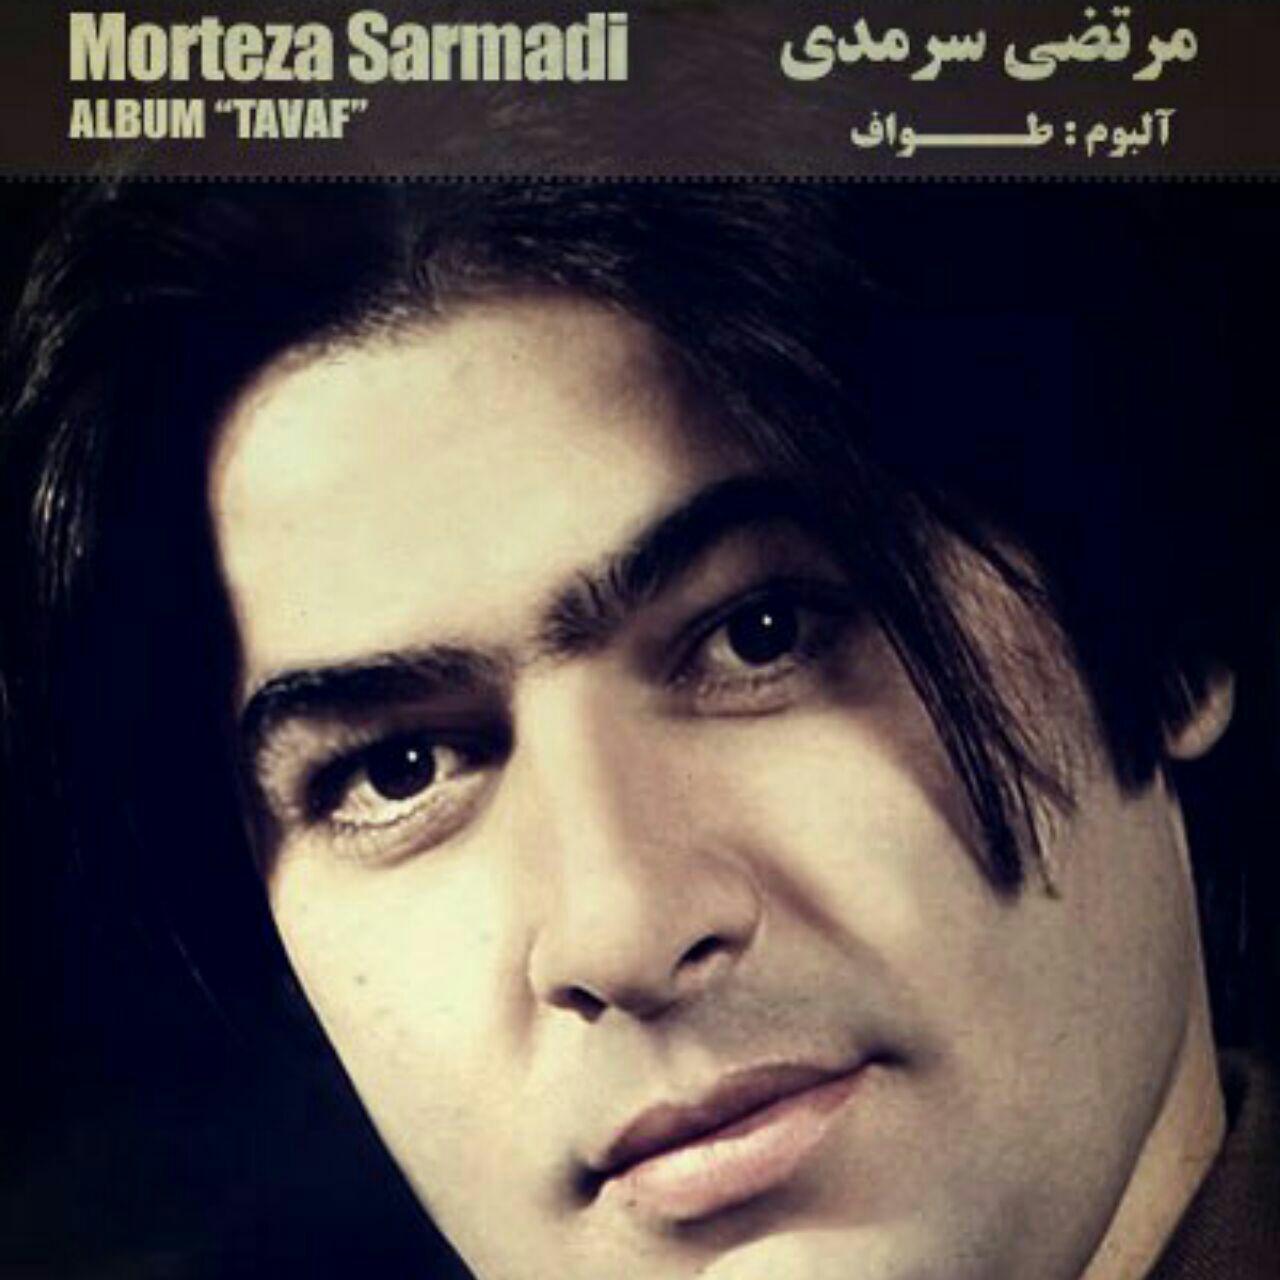  دانلود آهنگ جدید مرتضی سرمدی - طواف | Download New Music By Morteza Sarmadi - Tavaf